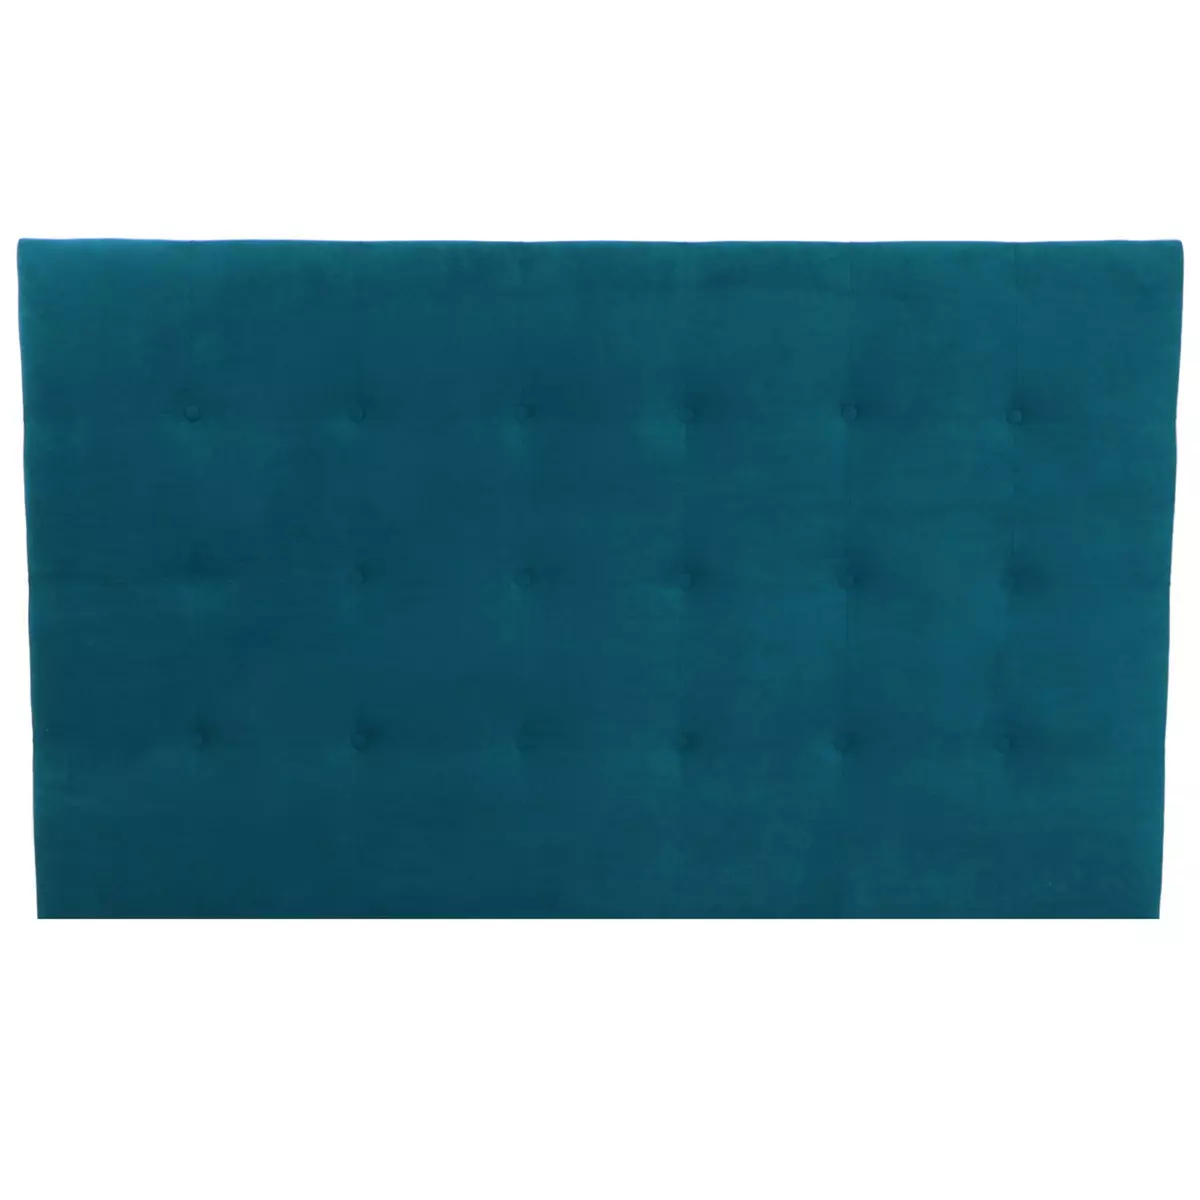 HOMIFAB Tête de lit capitonnée en velours bleu canard 140 cm - Nino